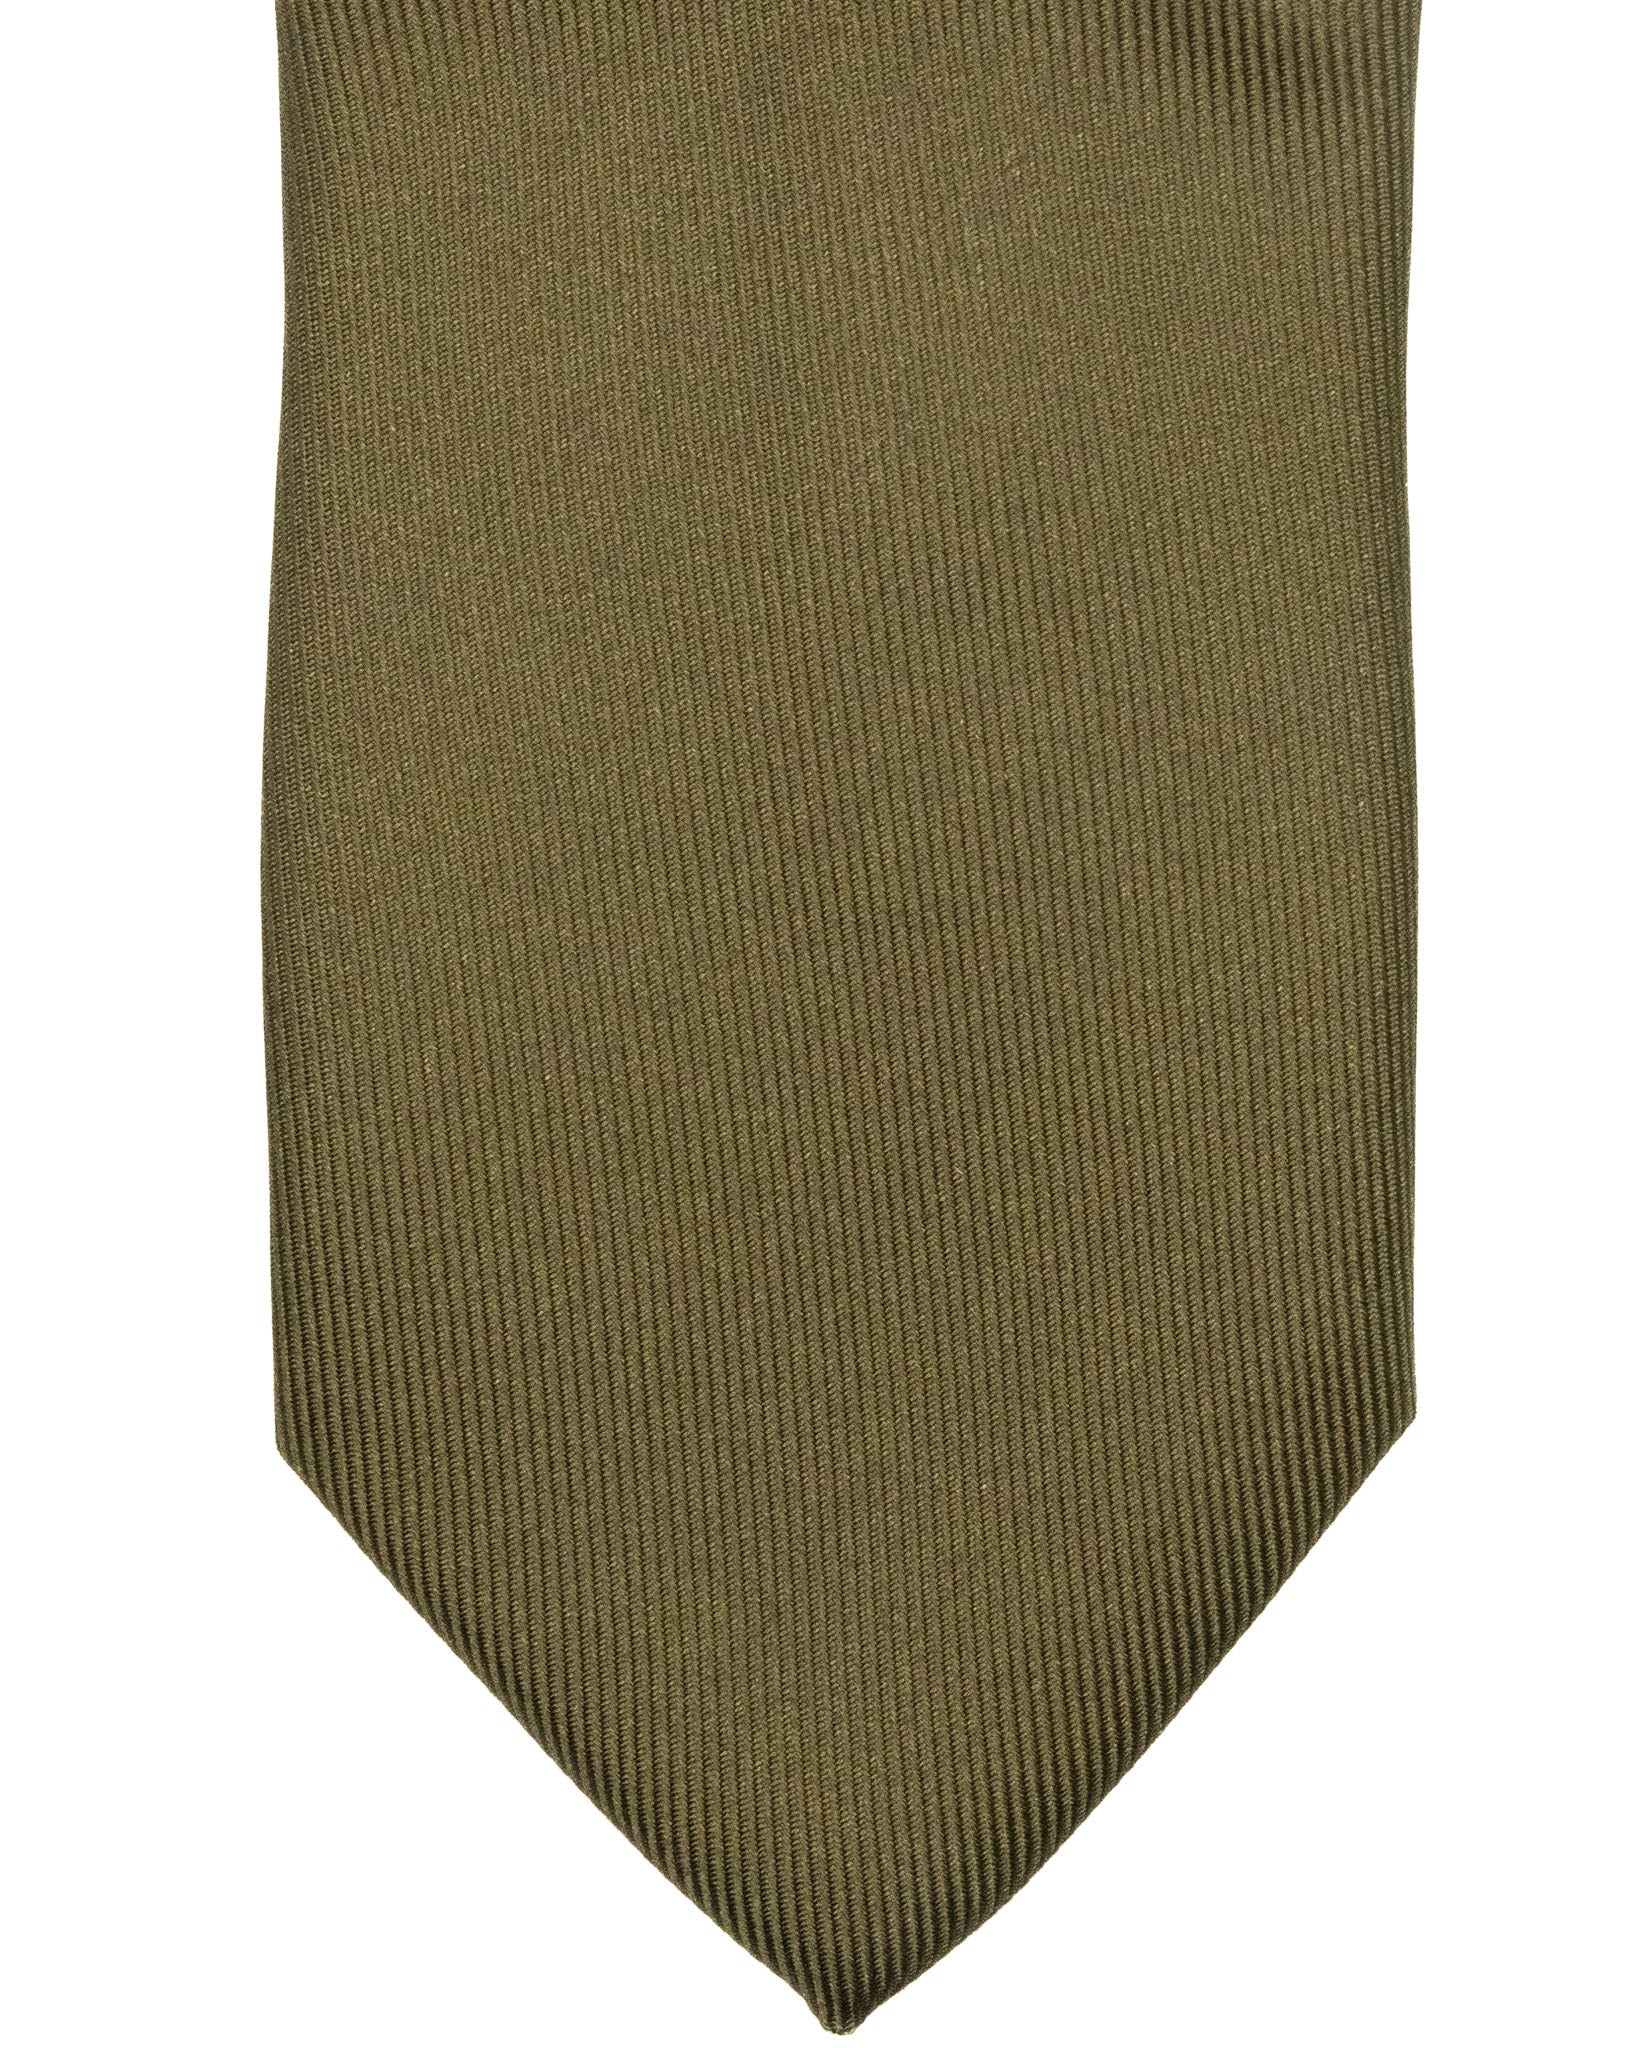 Cravatta - in seta twill verde oliva